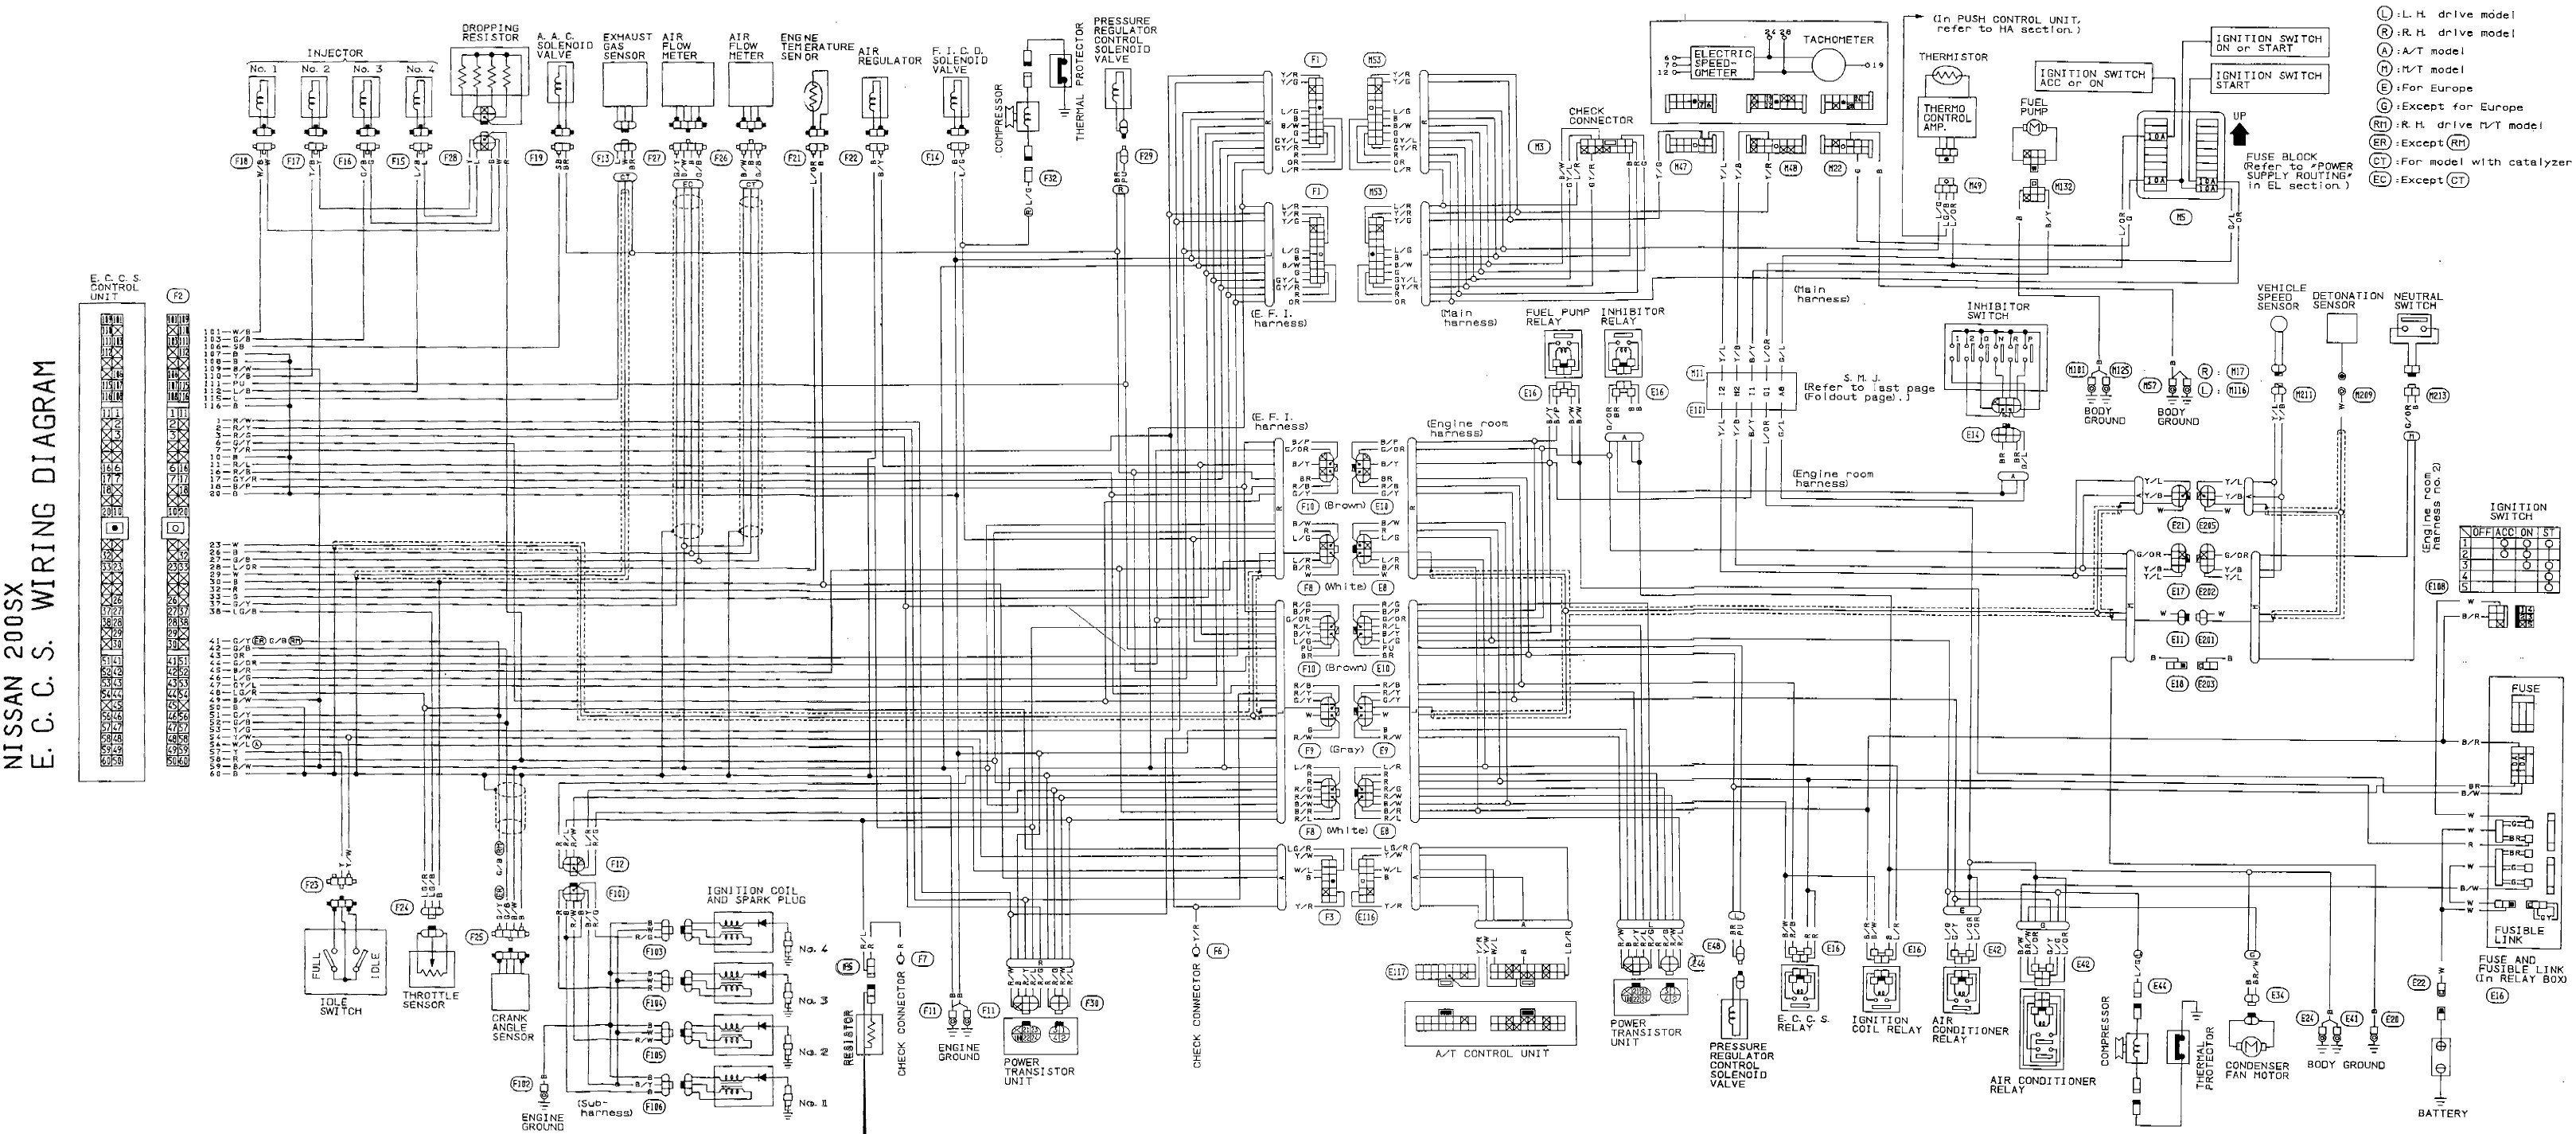 Jaguar X Type Wiring Diagram Engine Diagram Gif Honda Civic Parts Diagram Wonderful Likeness Of Jaguar X Type Wiring Diagram